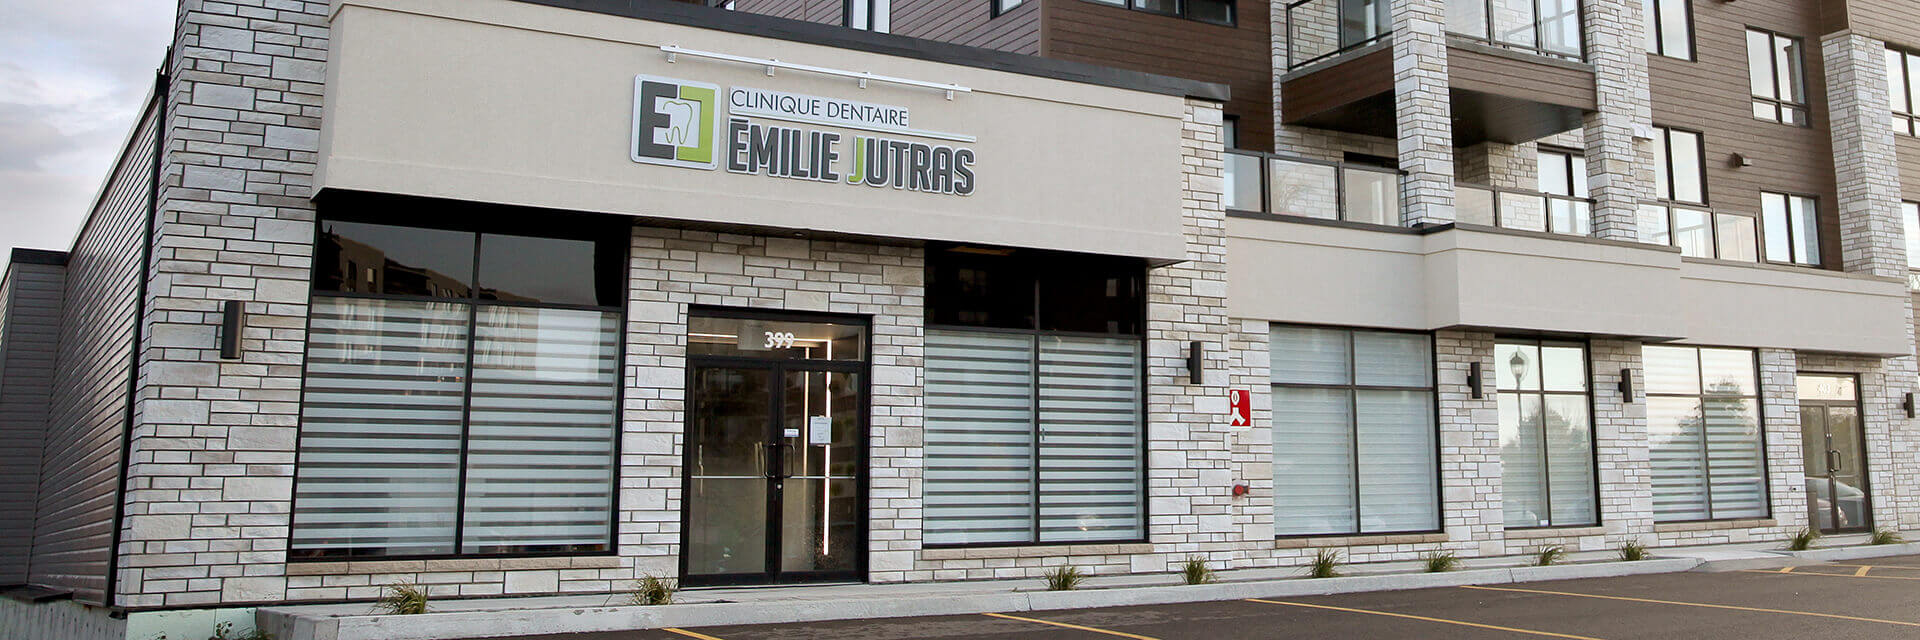 Vue extérieure de la Clinique dentaire Émilie Jutras